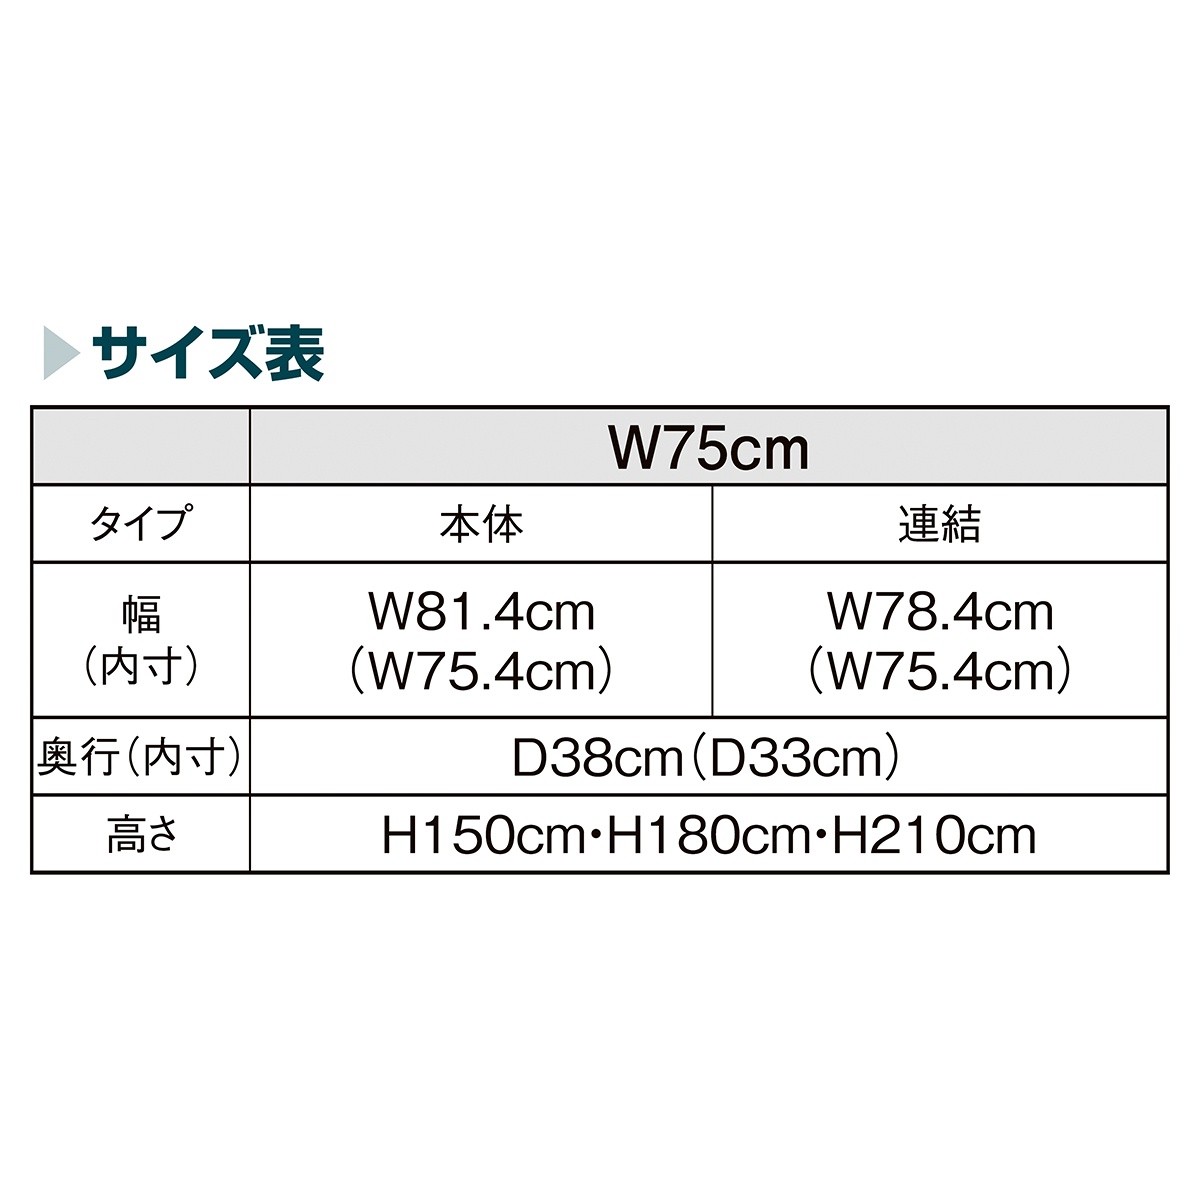 贈答品 ネットタイプ W75cm ブラック H210cm